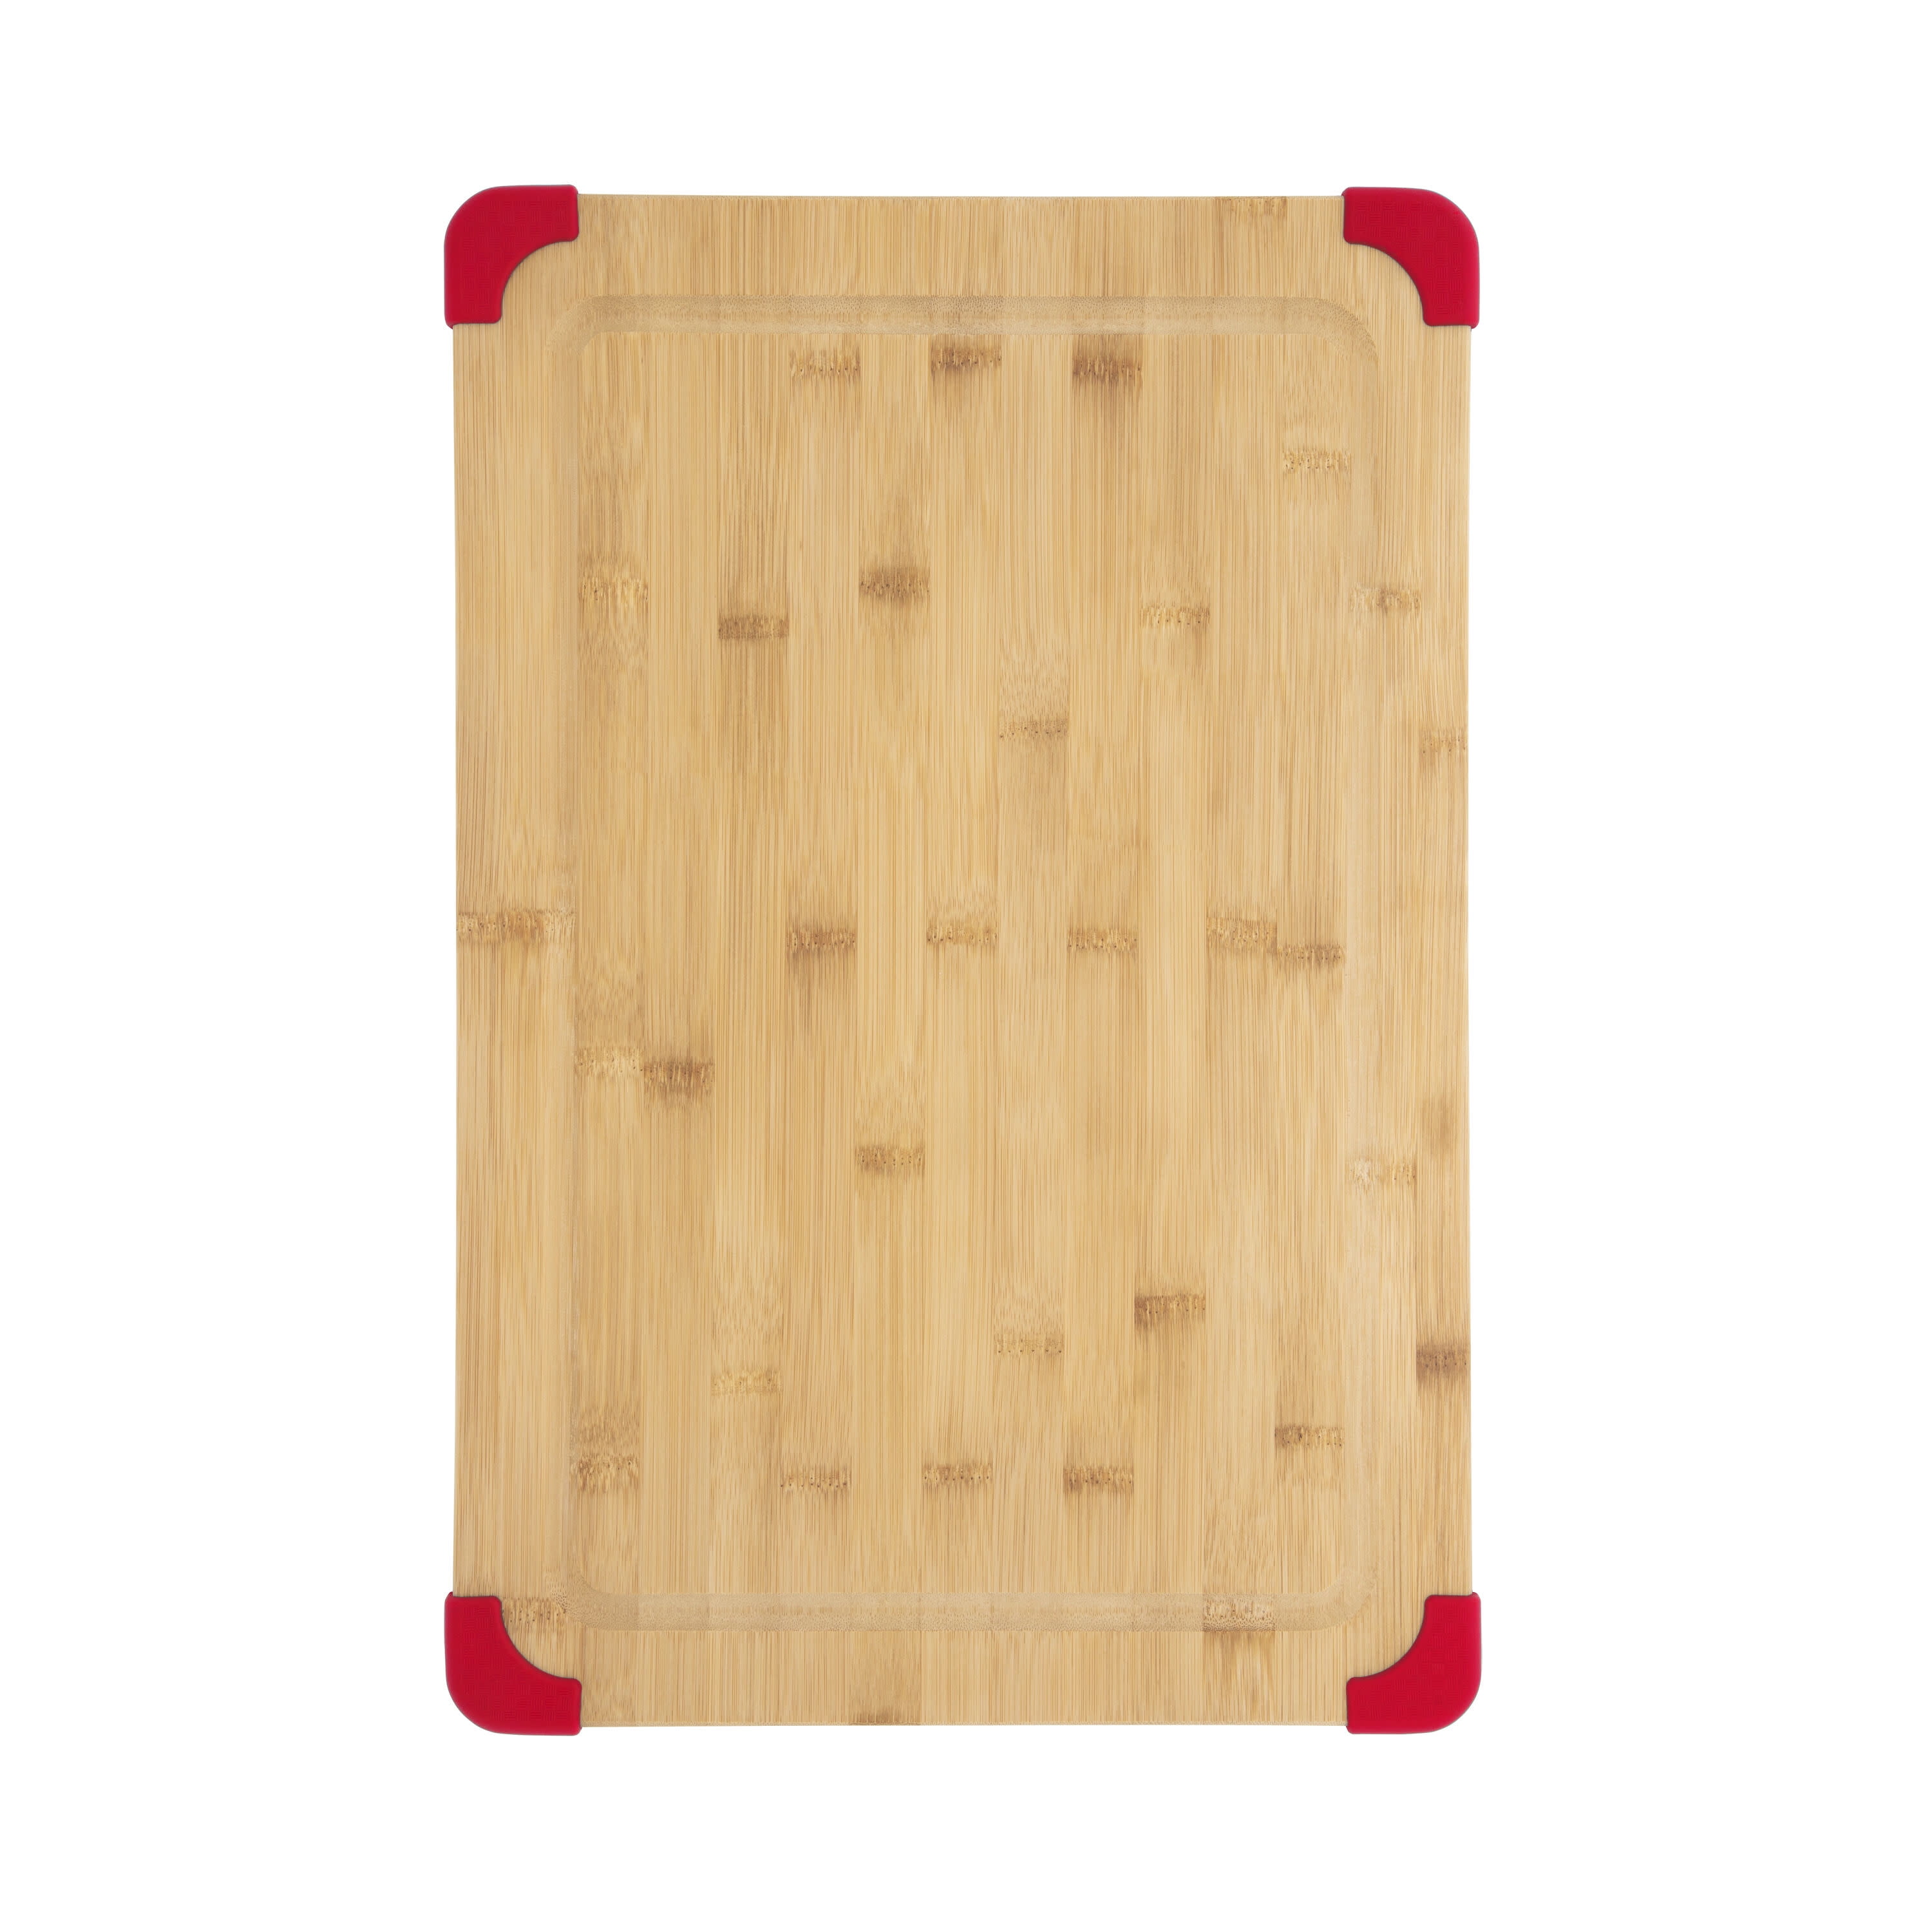 Bamboo Cutting Boards, Non-Slip Cork Backing